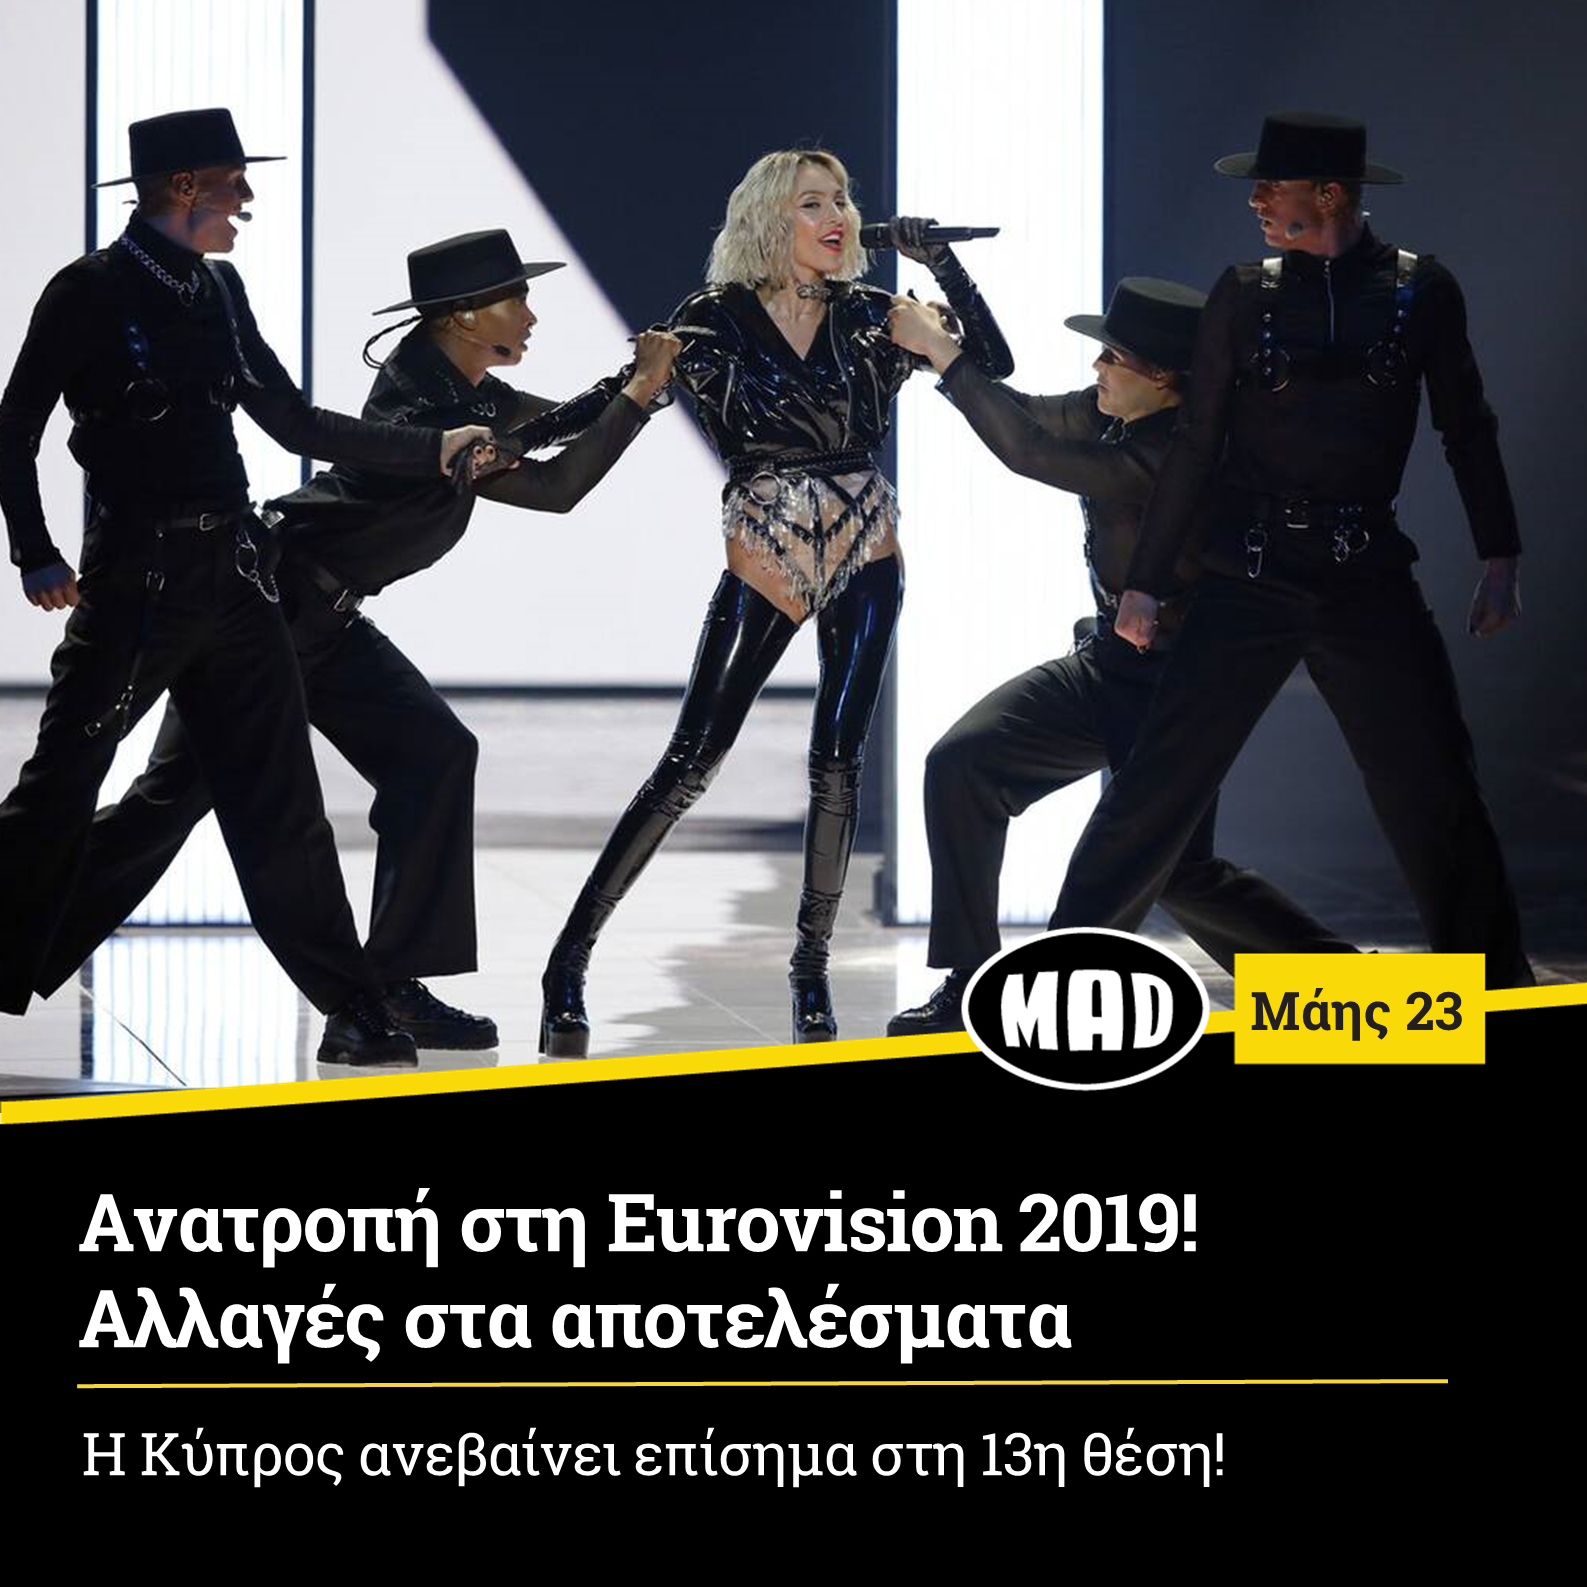 Ανατροπή στη Εurovision 2019! Αλλαγές στα αποτελέσματα.